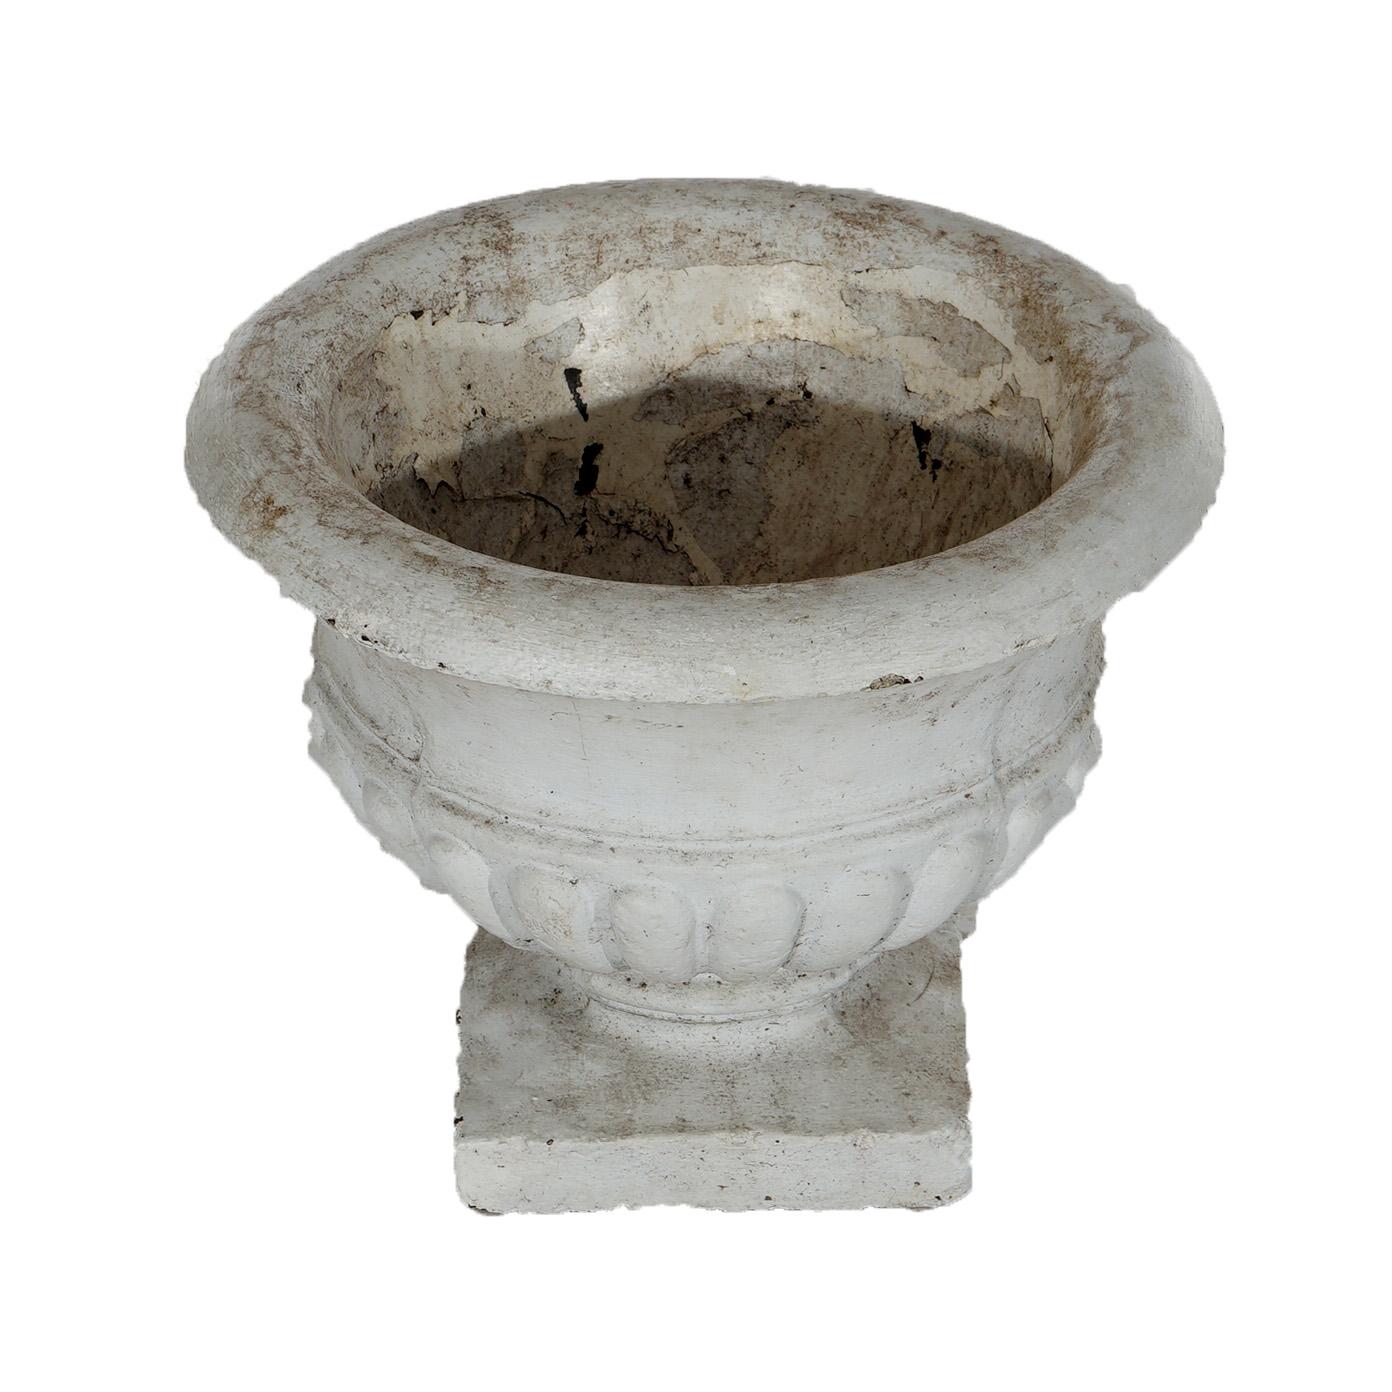 Concrete Classical Painted Cast Hardstone Mellon Bowl Garden Urn 20th C For Sale